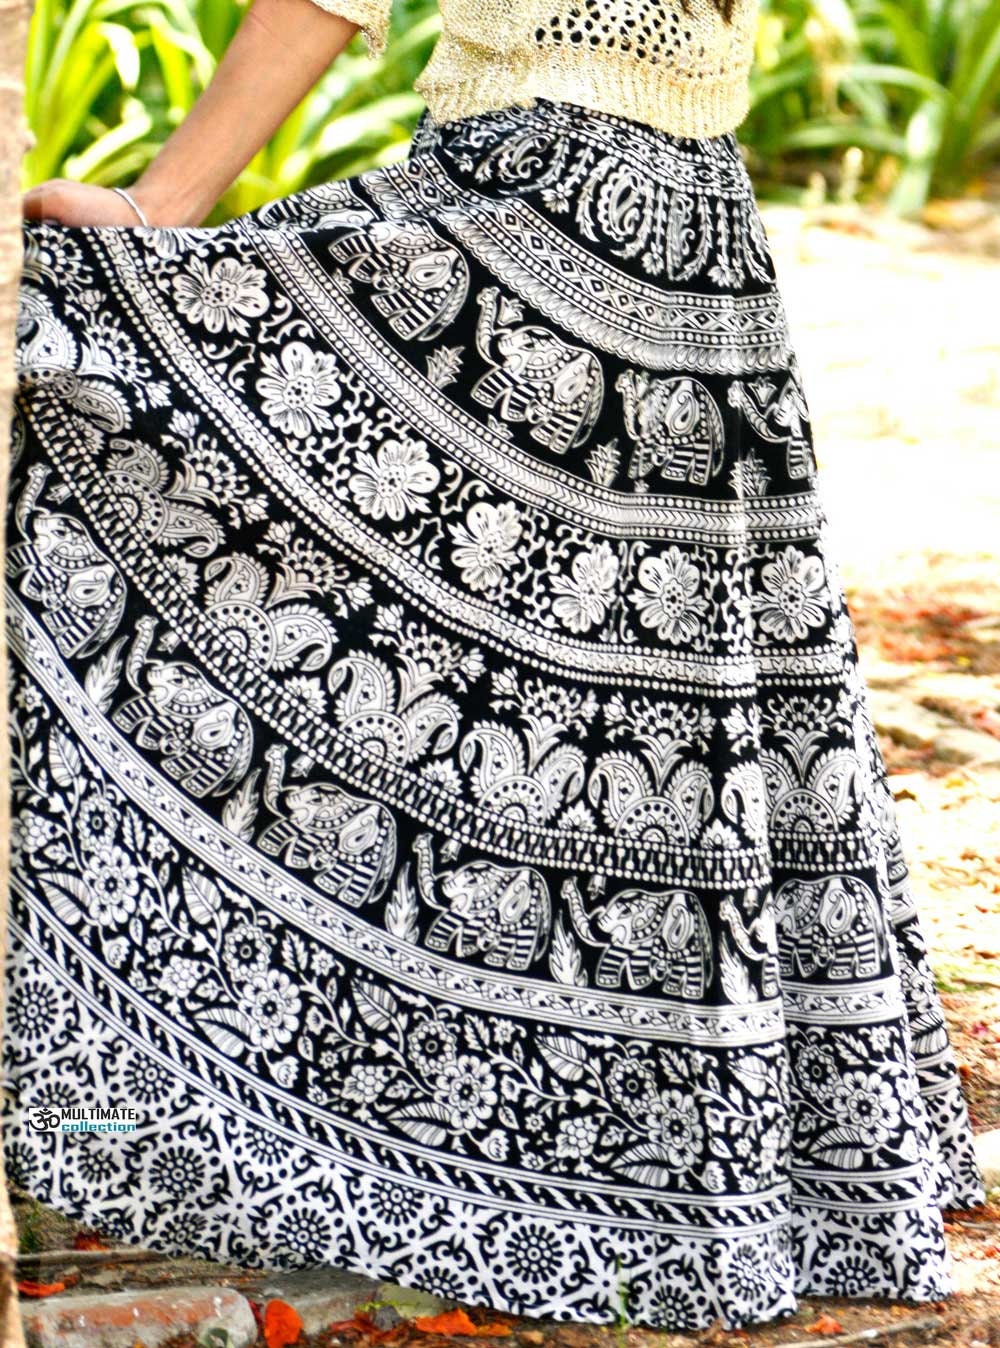 Indian Boho skirt, Mandala skirt, Elephant gypsy skirt, Bohemian maxi skirt Hippie skirt, cotton ethnic skirt, Indian Full skirt for women